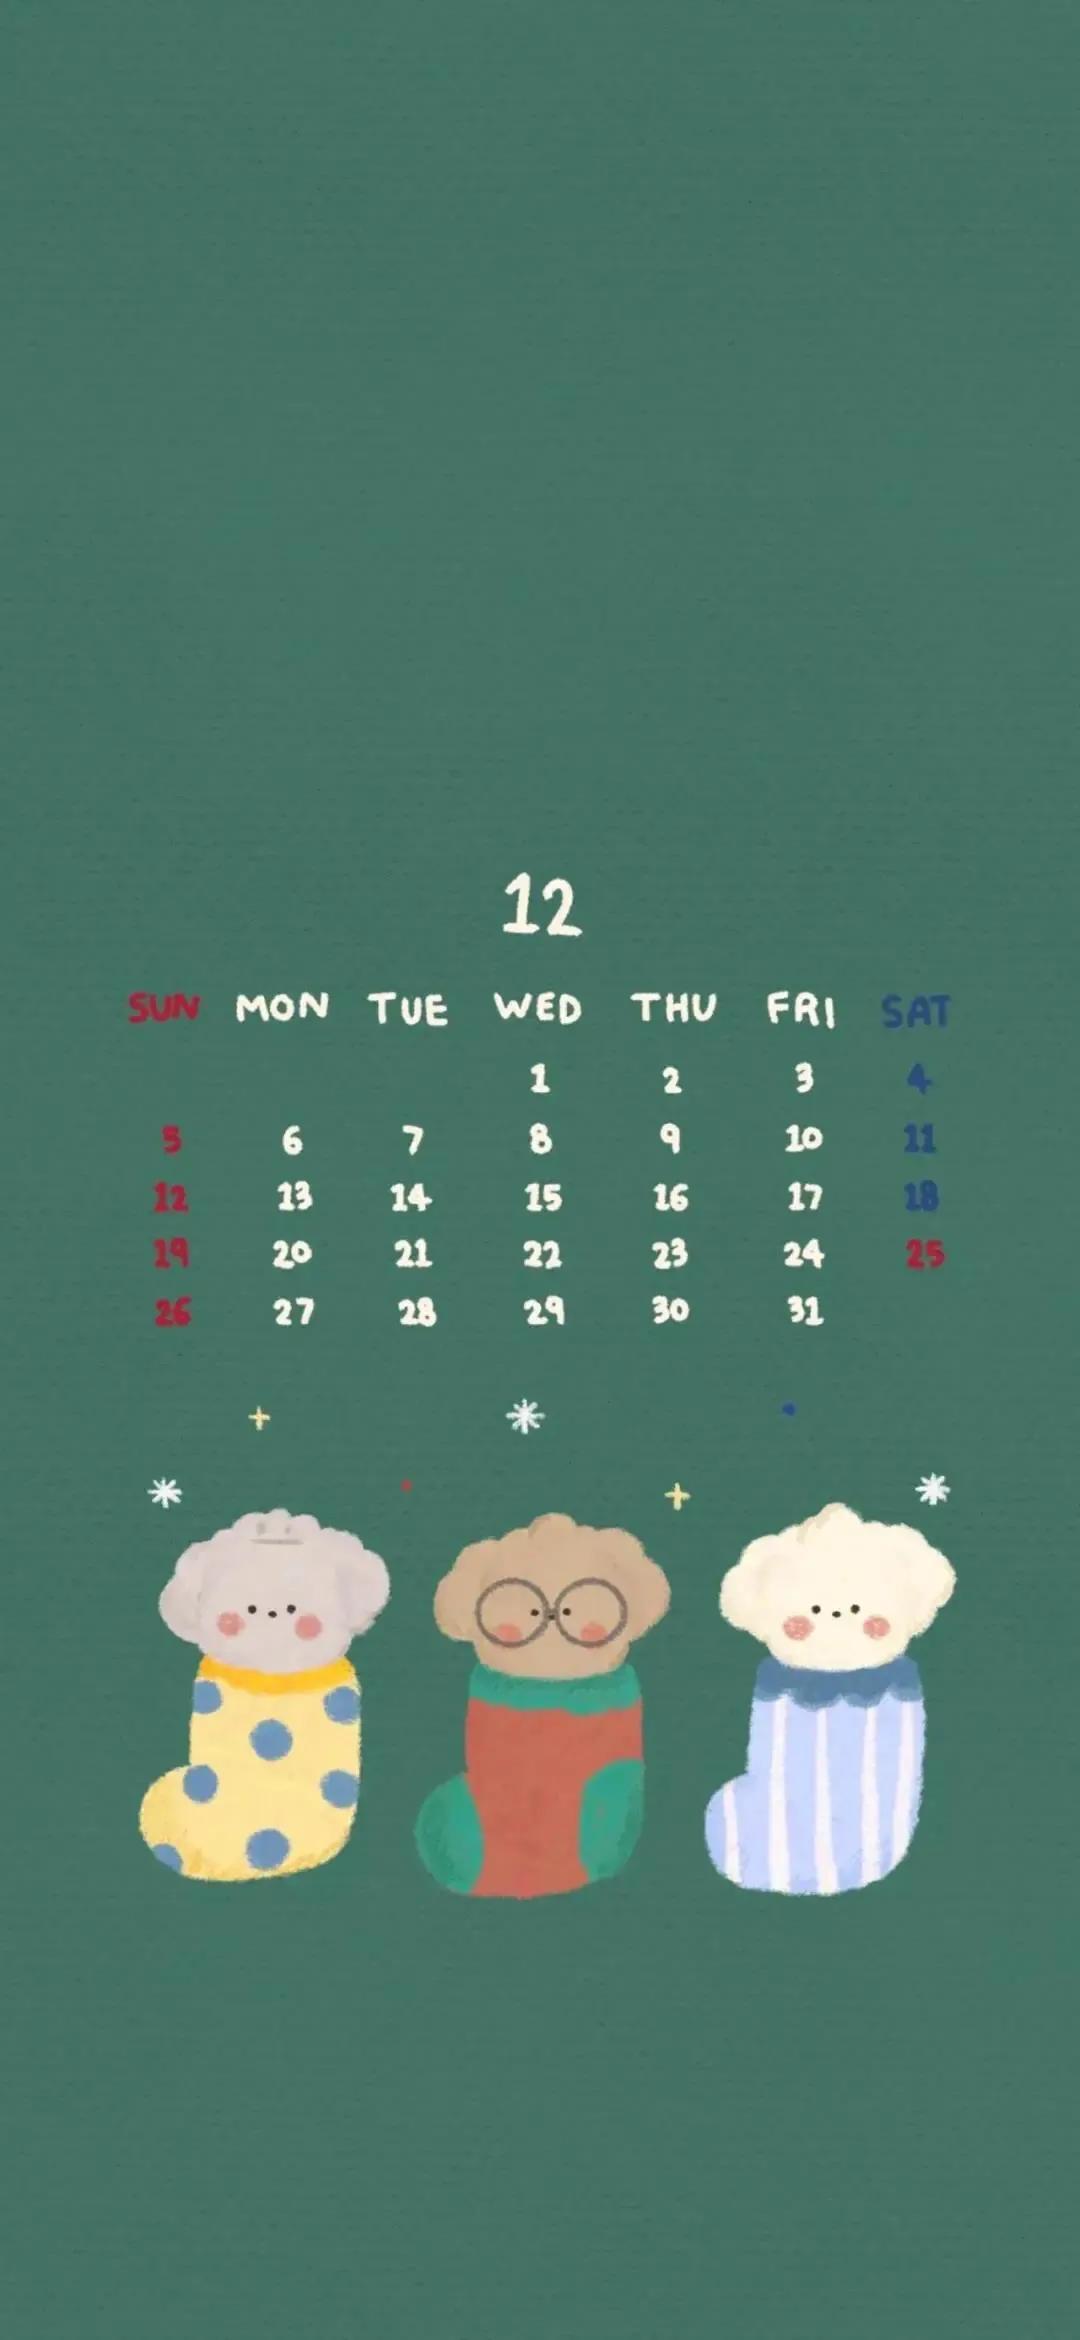 Wallpaper | December Calendar Wallpaper